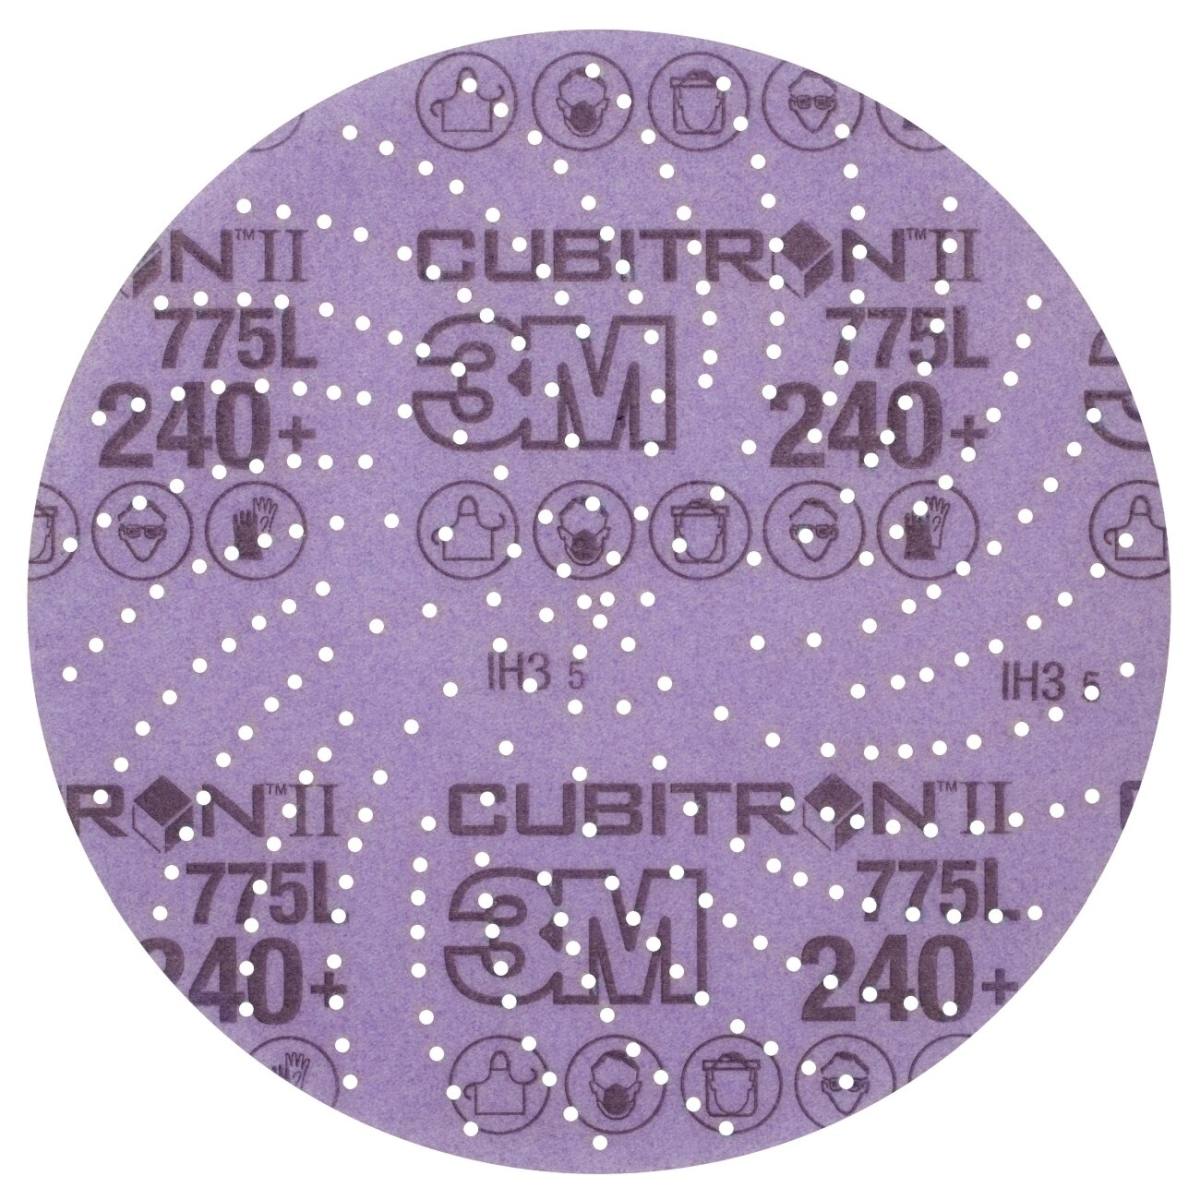 3M Cubitron II Hookit film disc 775L, 150 mm, 240+, multiforo #47098